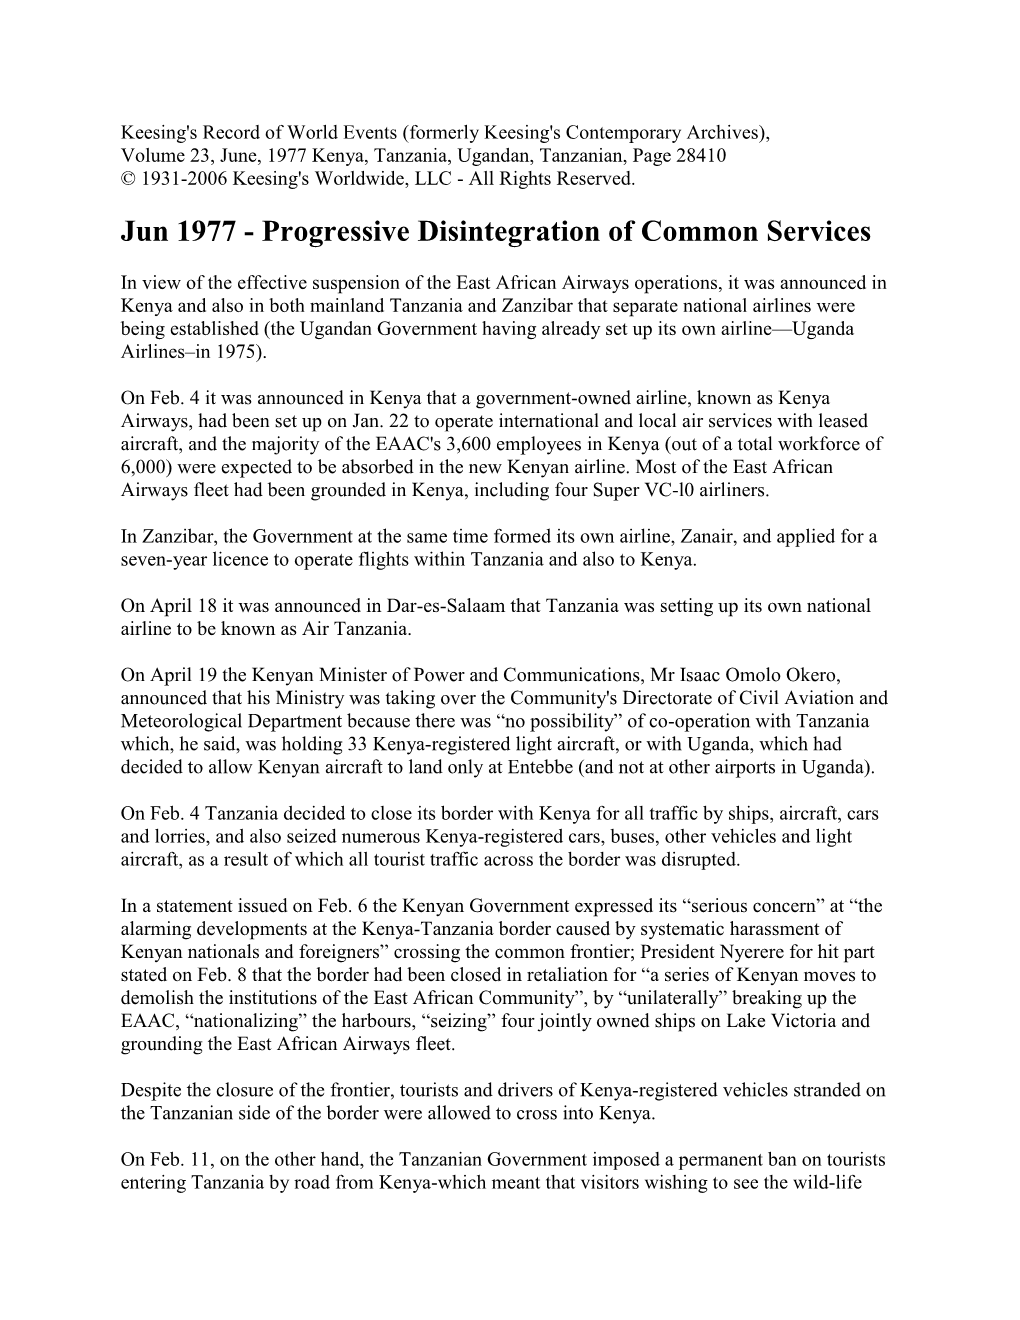 Jun 1977 - Progressive Disintegration of Common Services